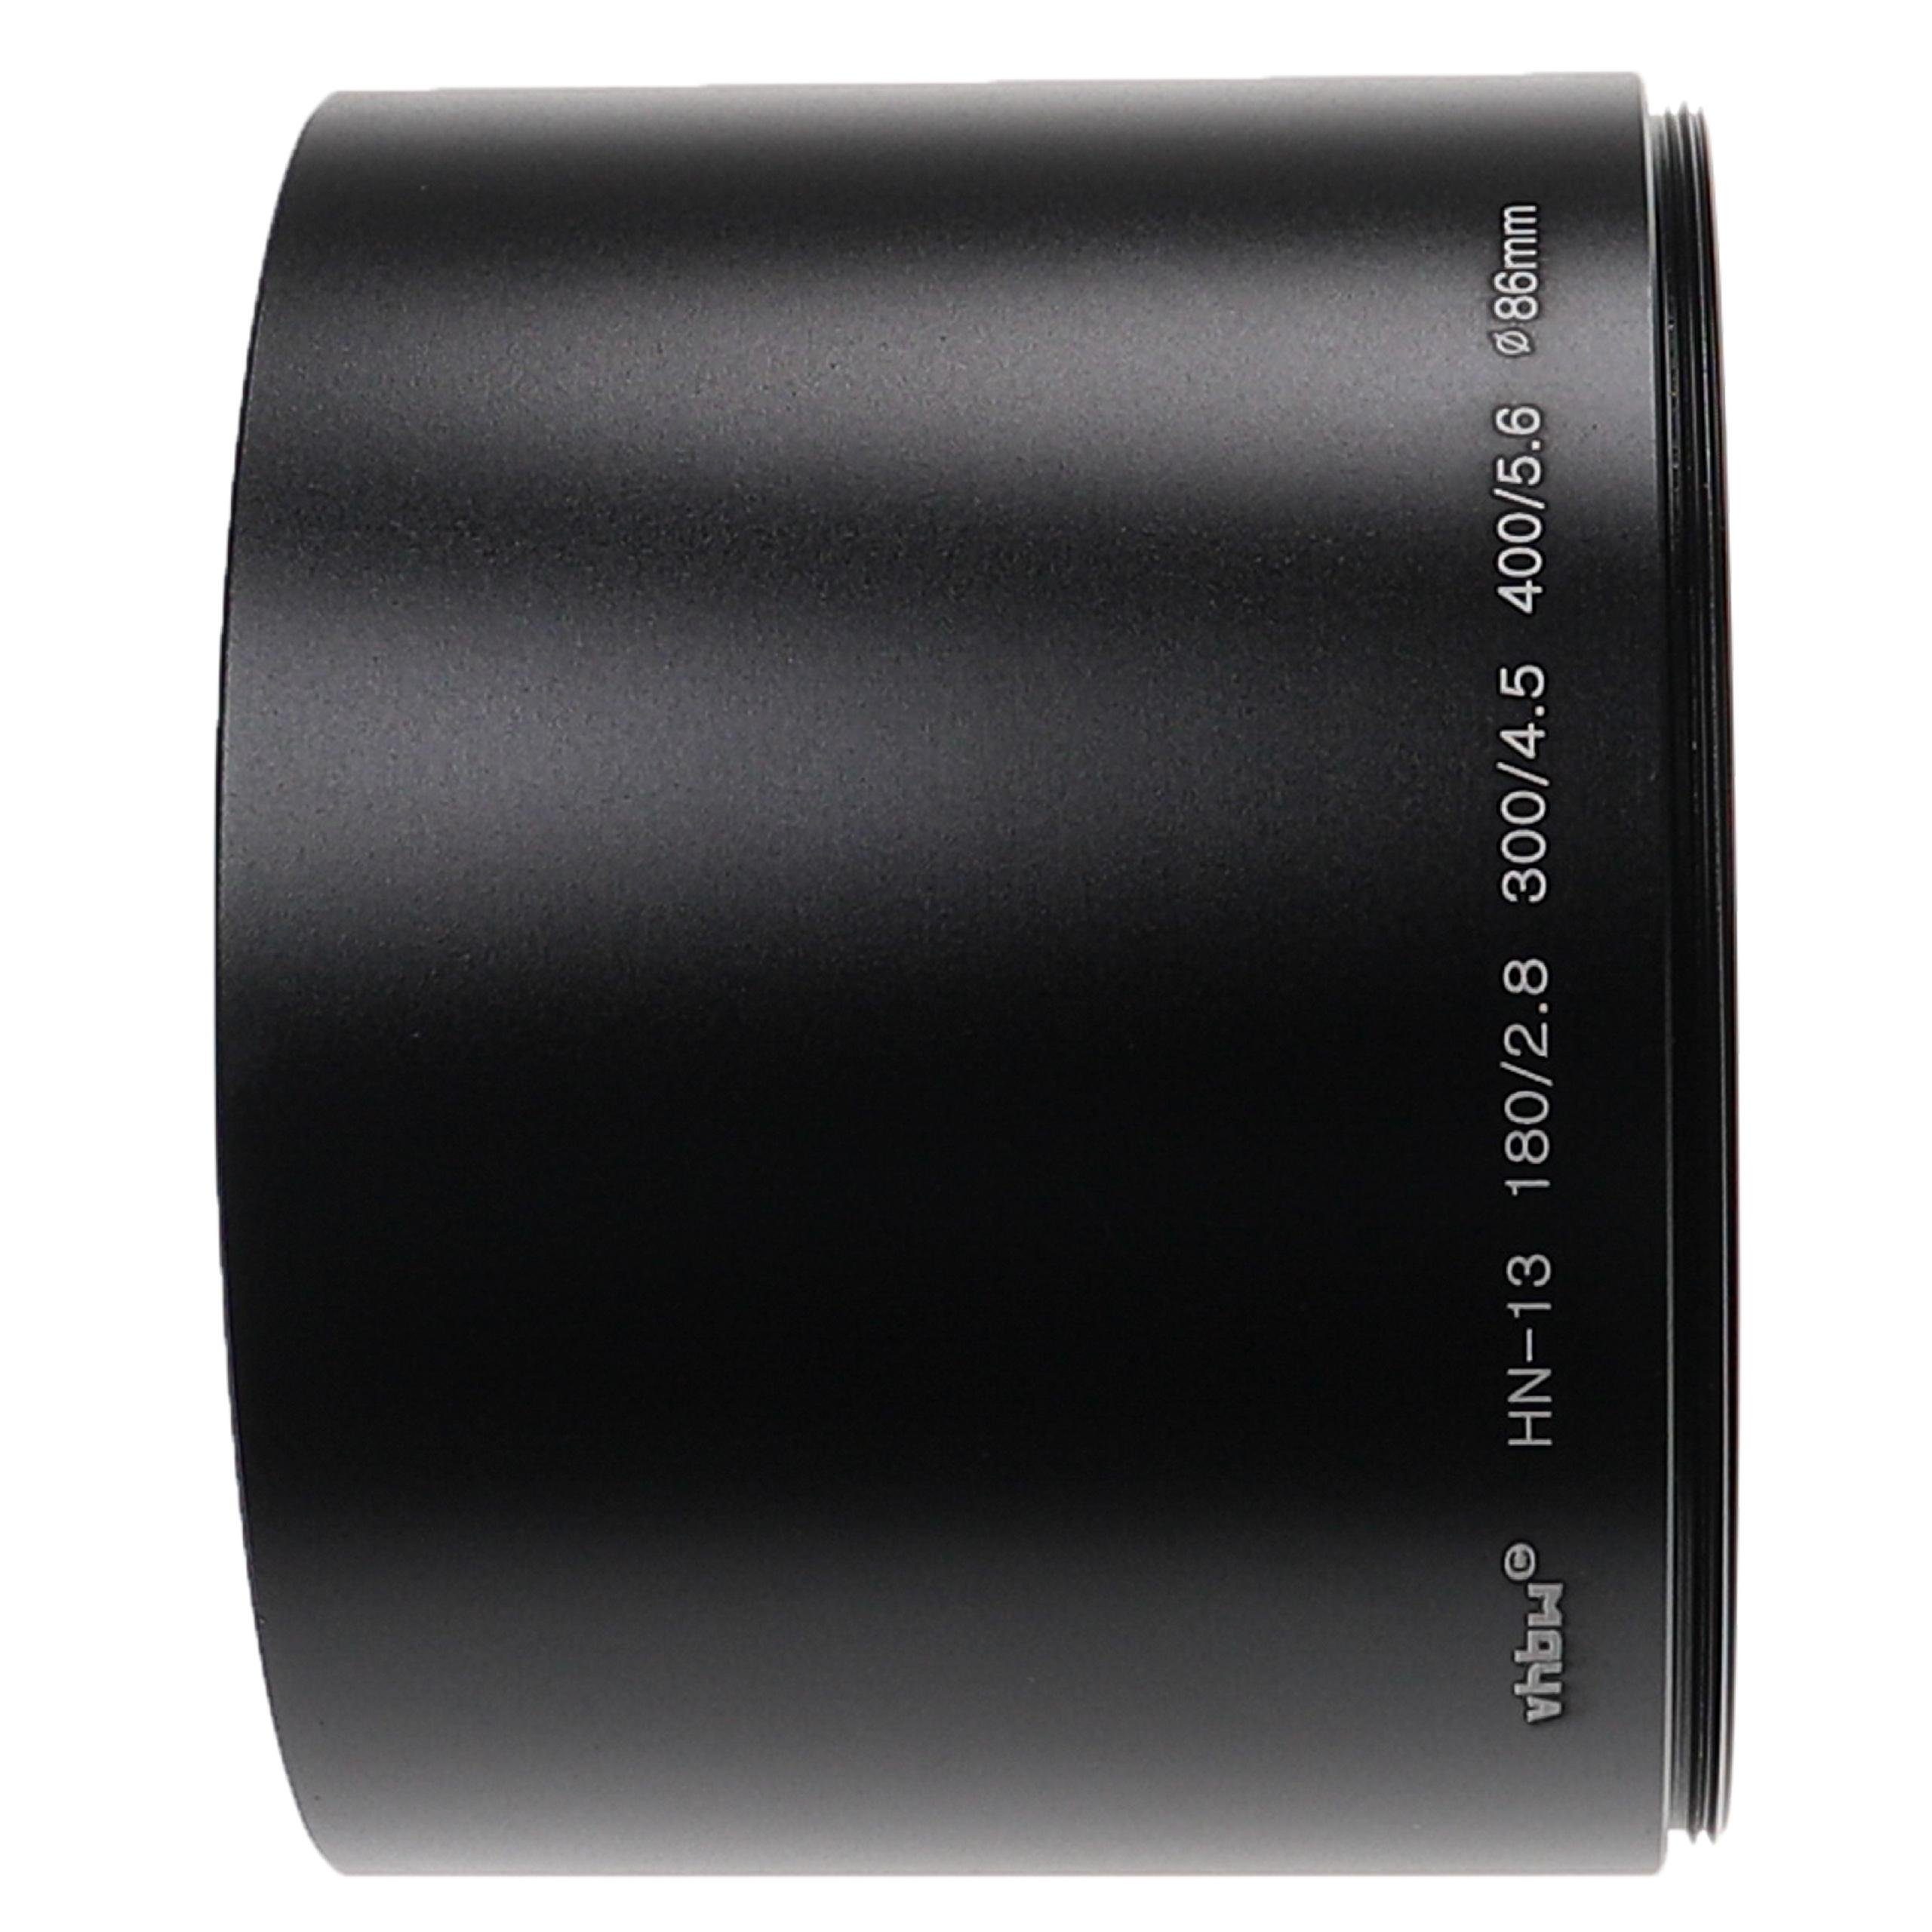 vhbw 300/4.5, für 72 Polfilter 180/2.8, Nikon Objektive mit Gegenlichtblende mm passend